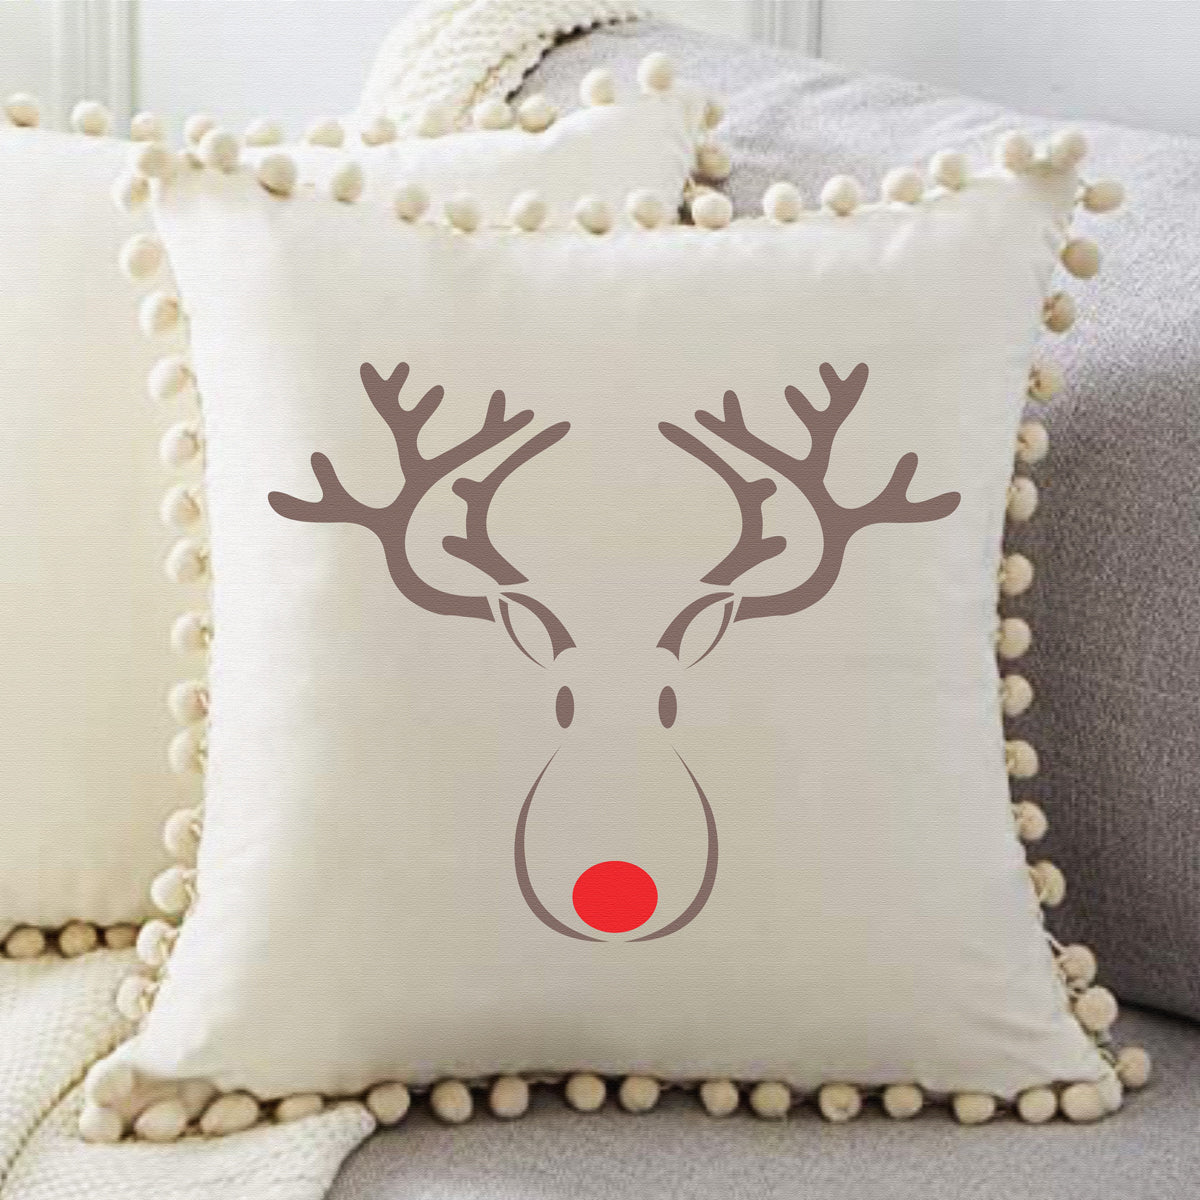 Rudolph the Red Nose Reindeer Stencil - Superior Stencils